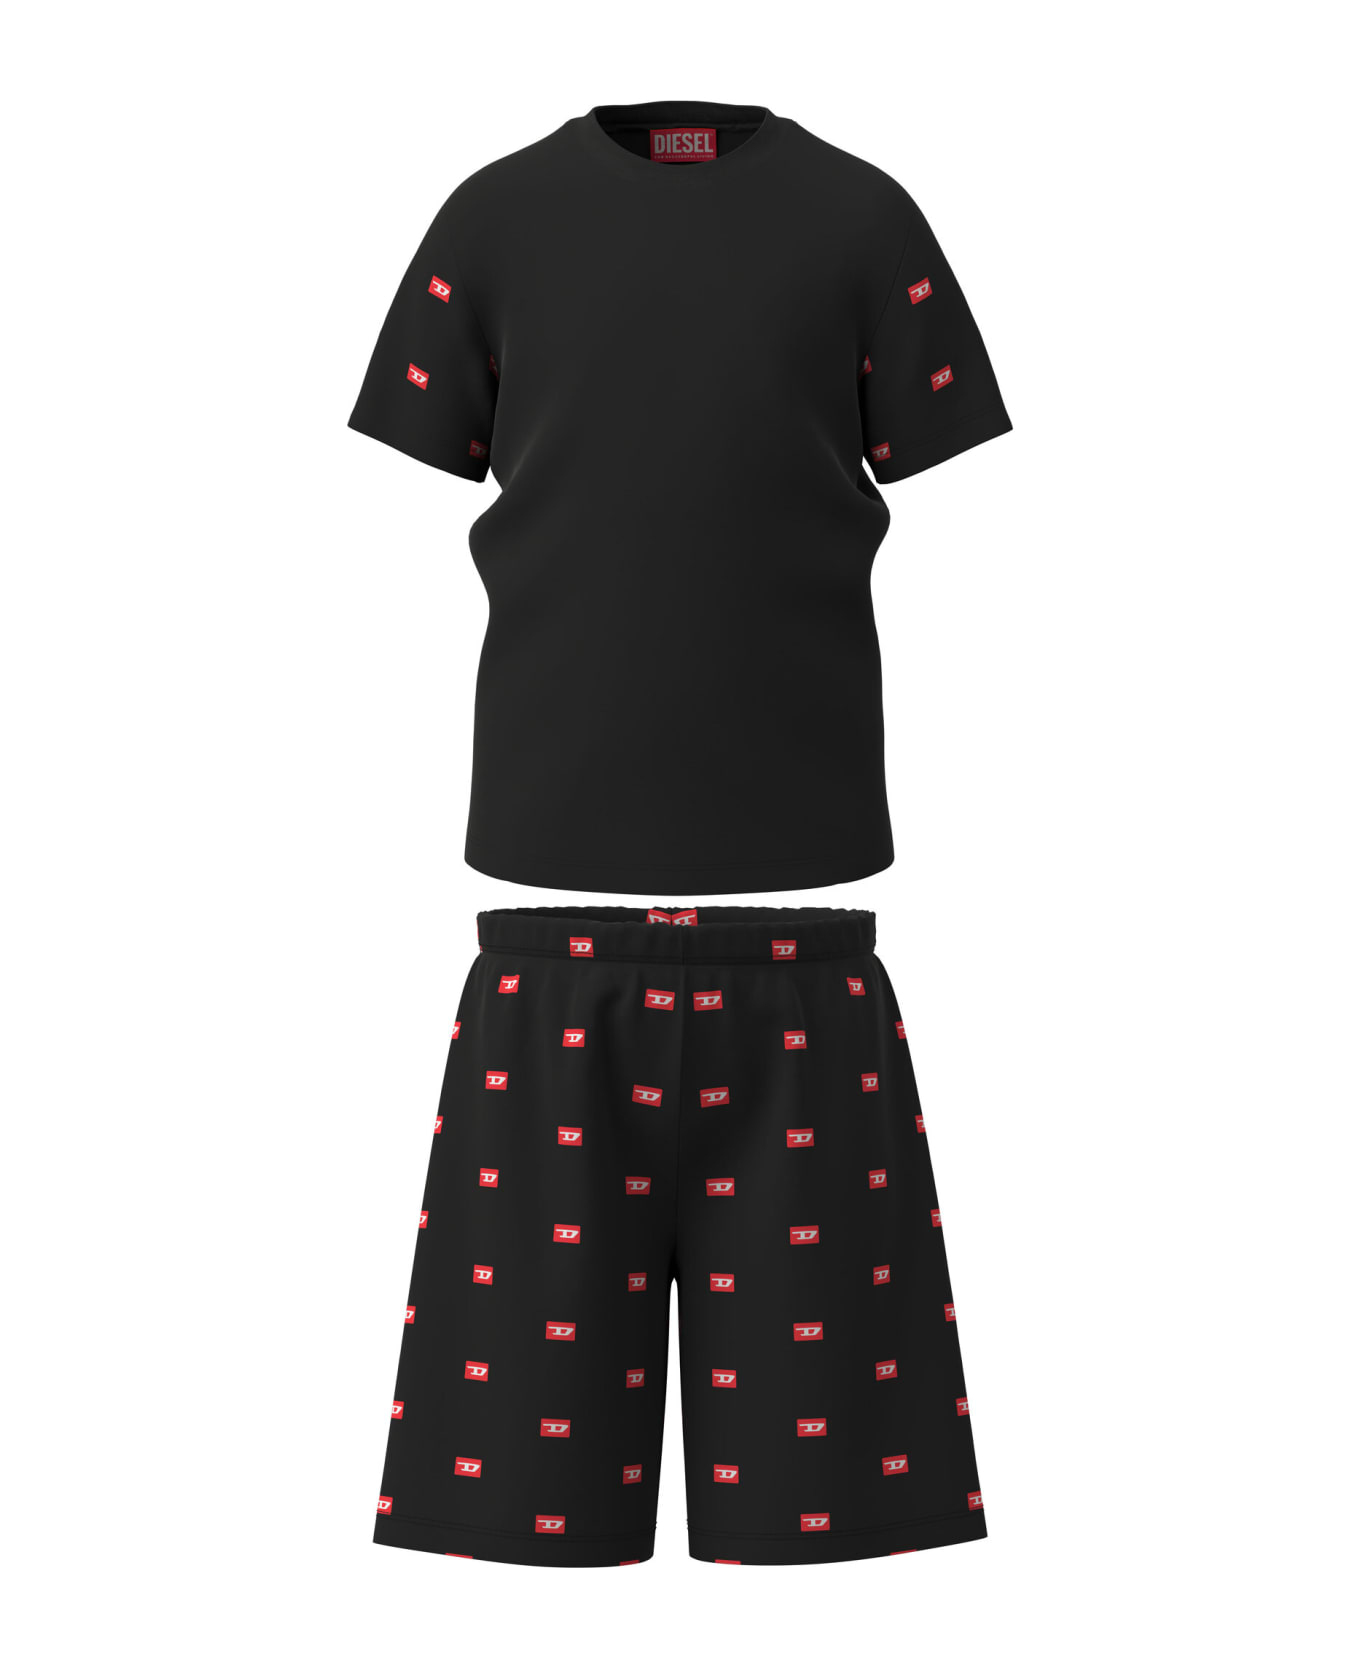 Diesel Untinbal D Pyjama Diesel Black Jersey Short Pajamas With Logo - Black